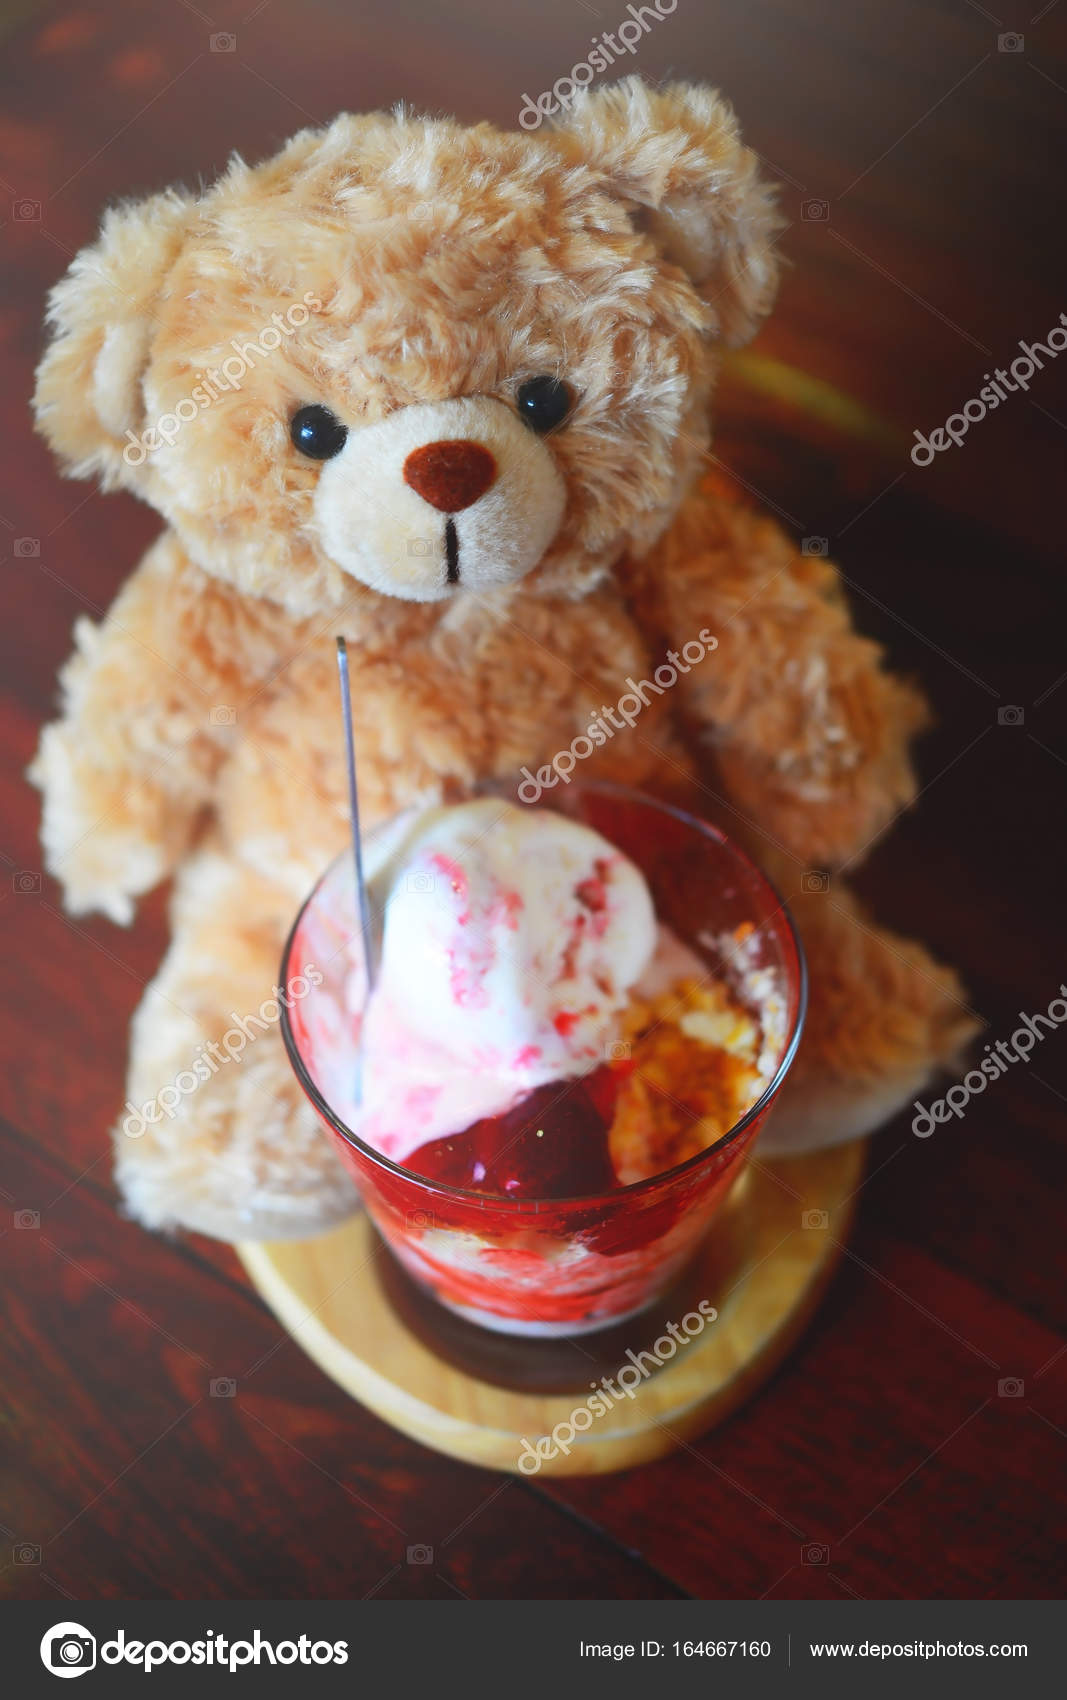 ice cream teddy bear